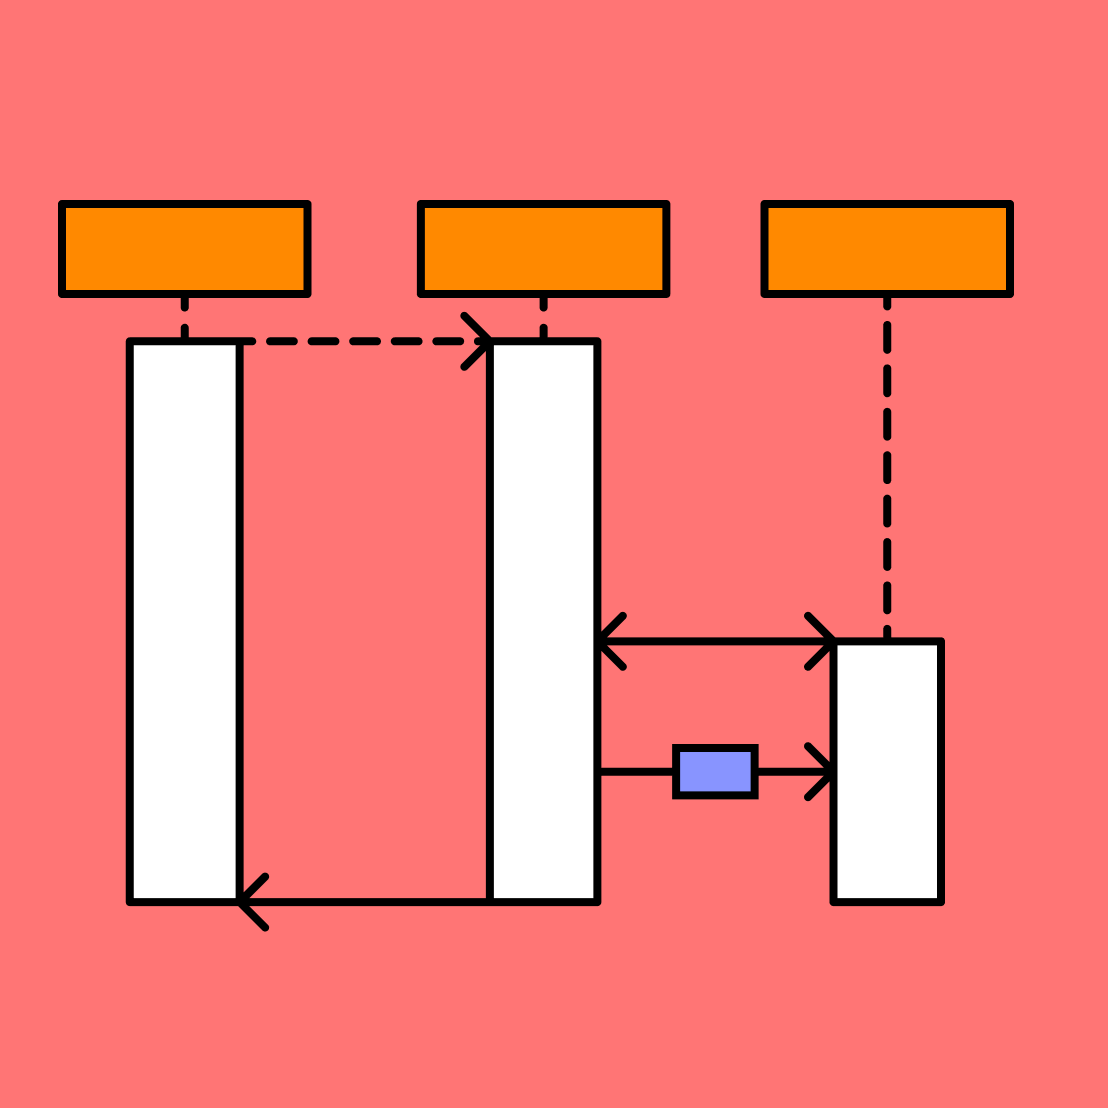 design sequence diagram tool